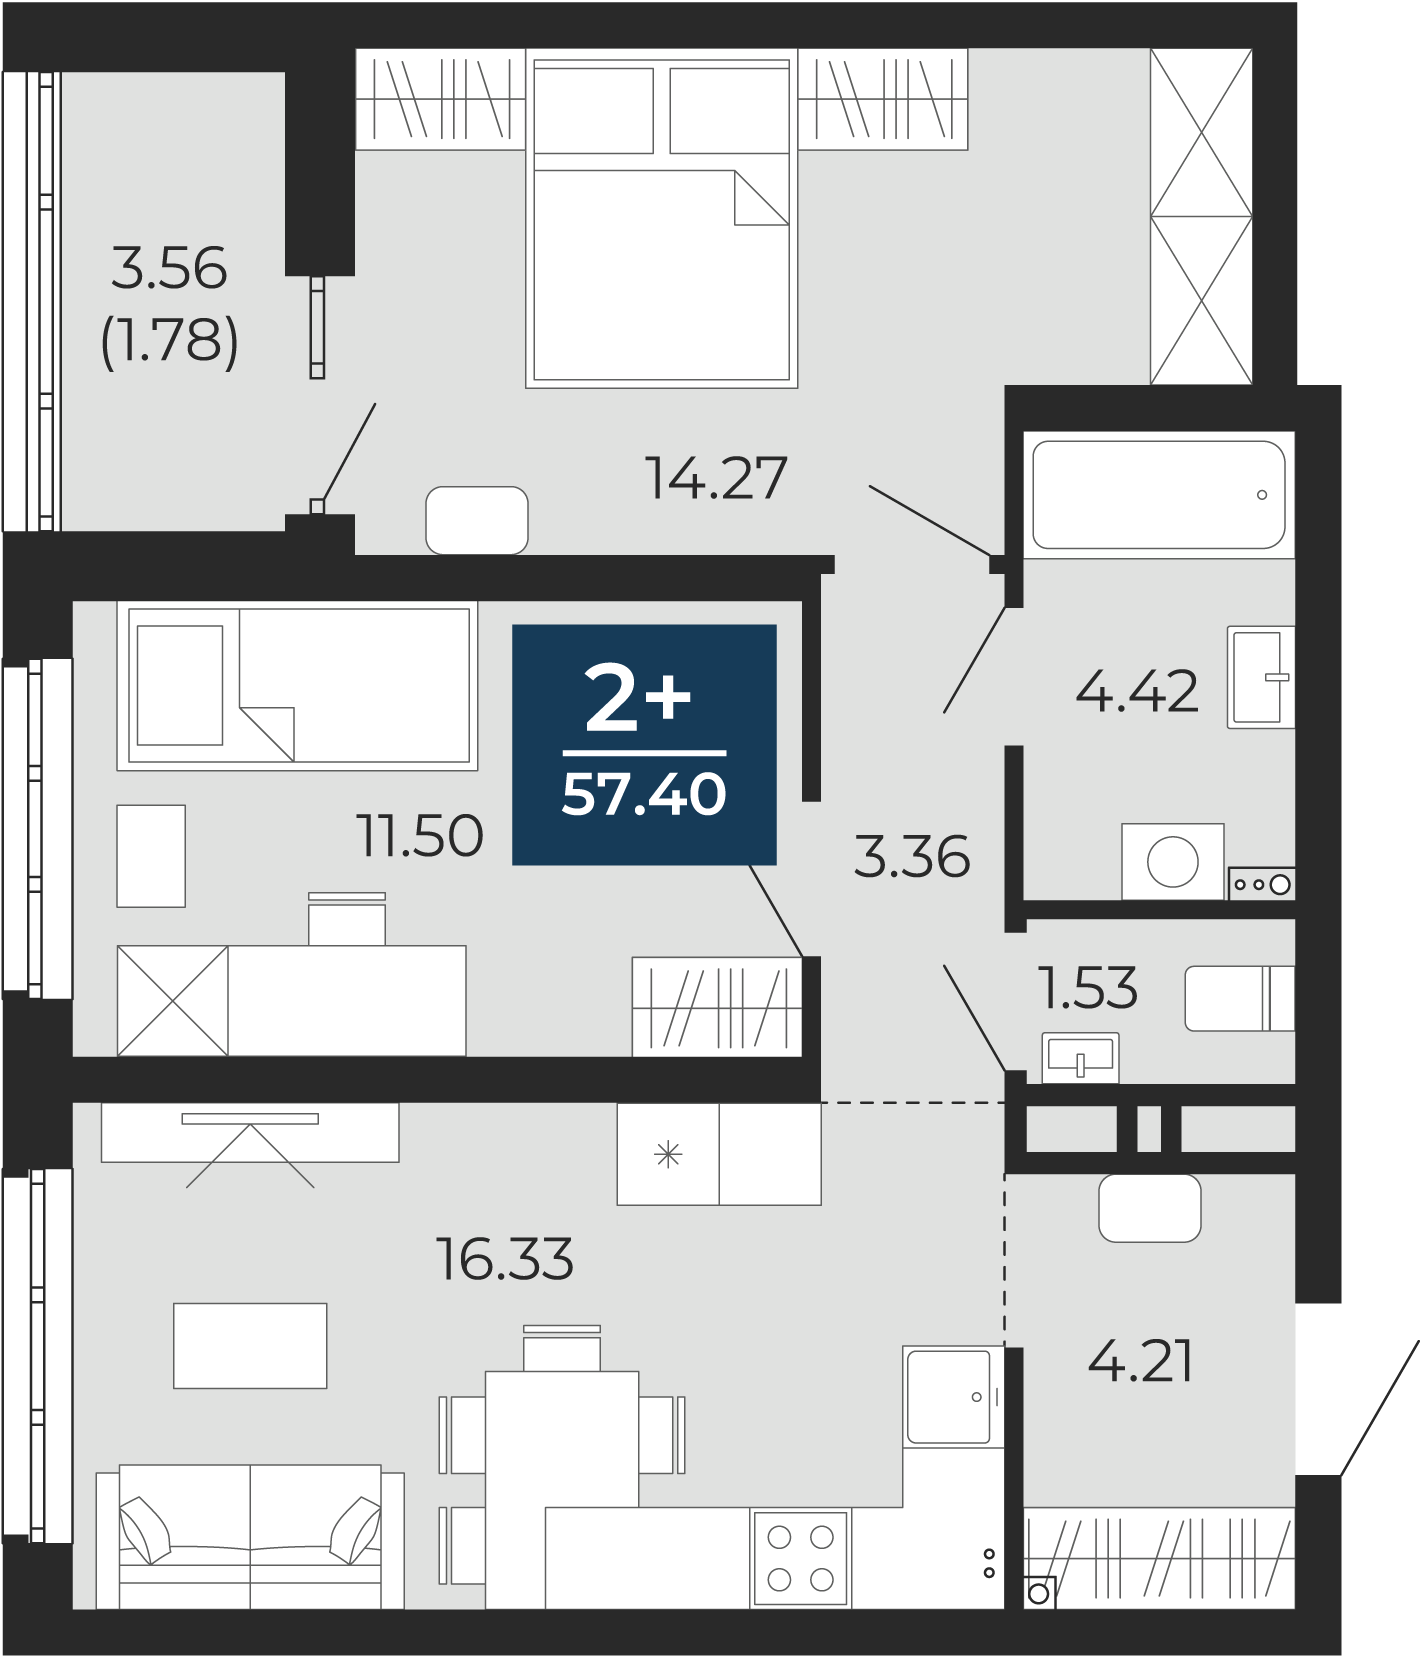 Квартира № 114, 2-комнатная, 57.4 кв. м, 2 этаж